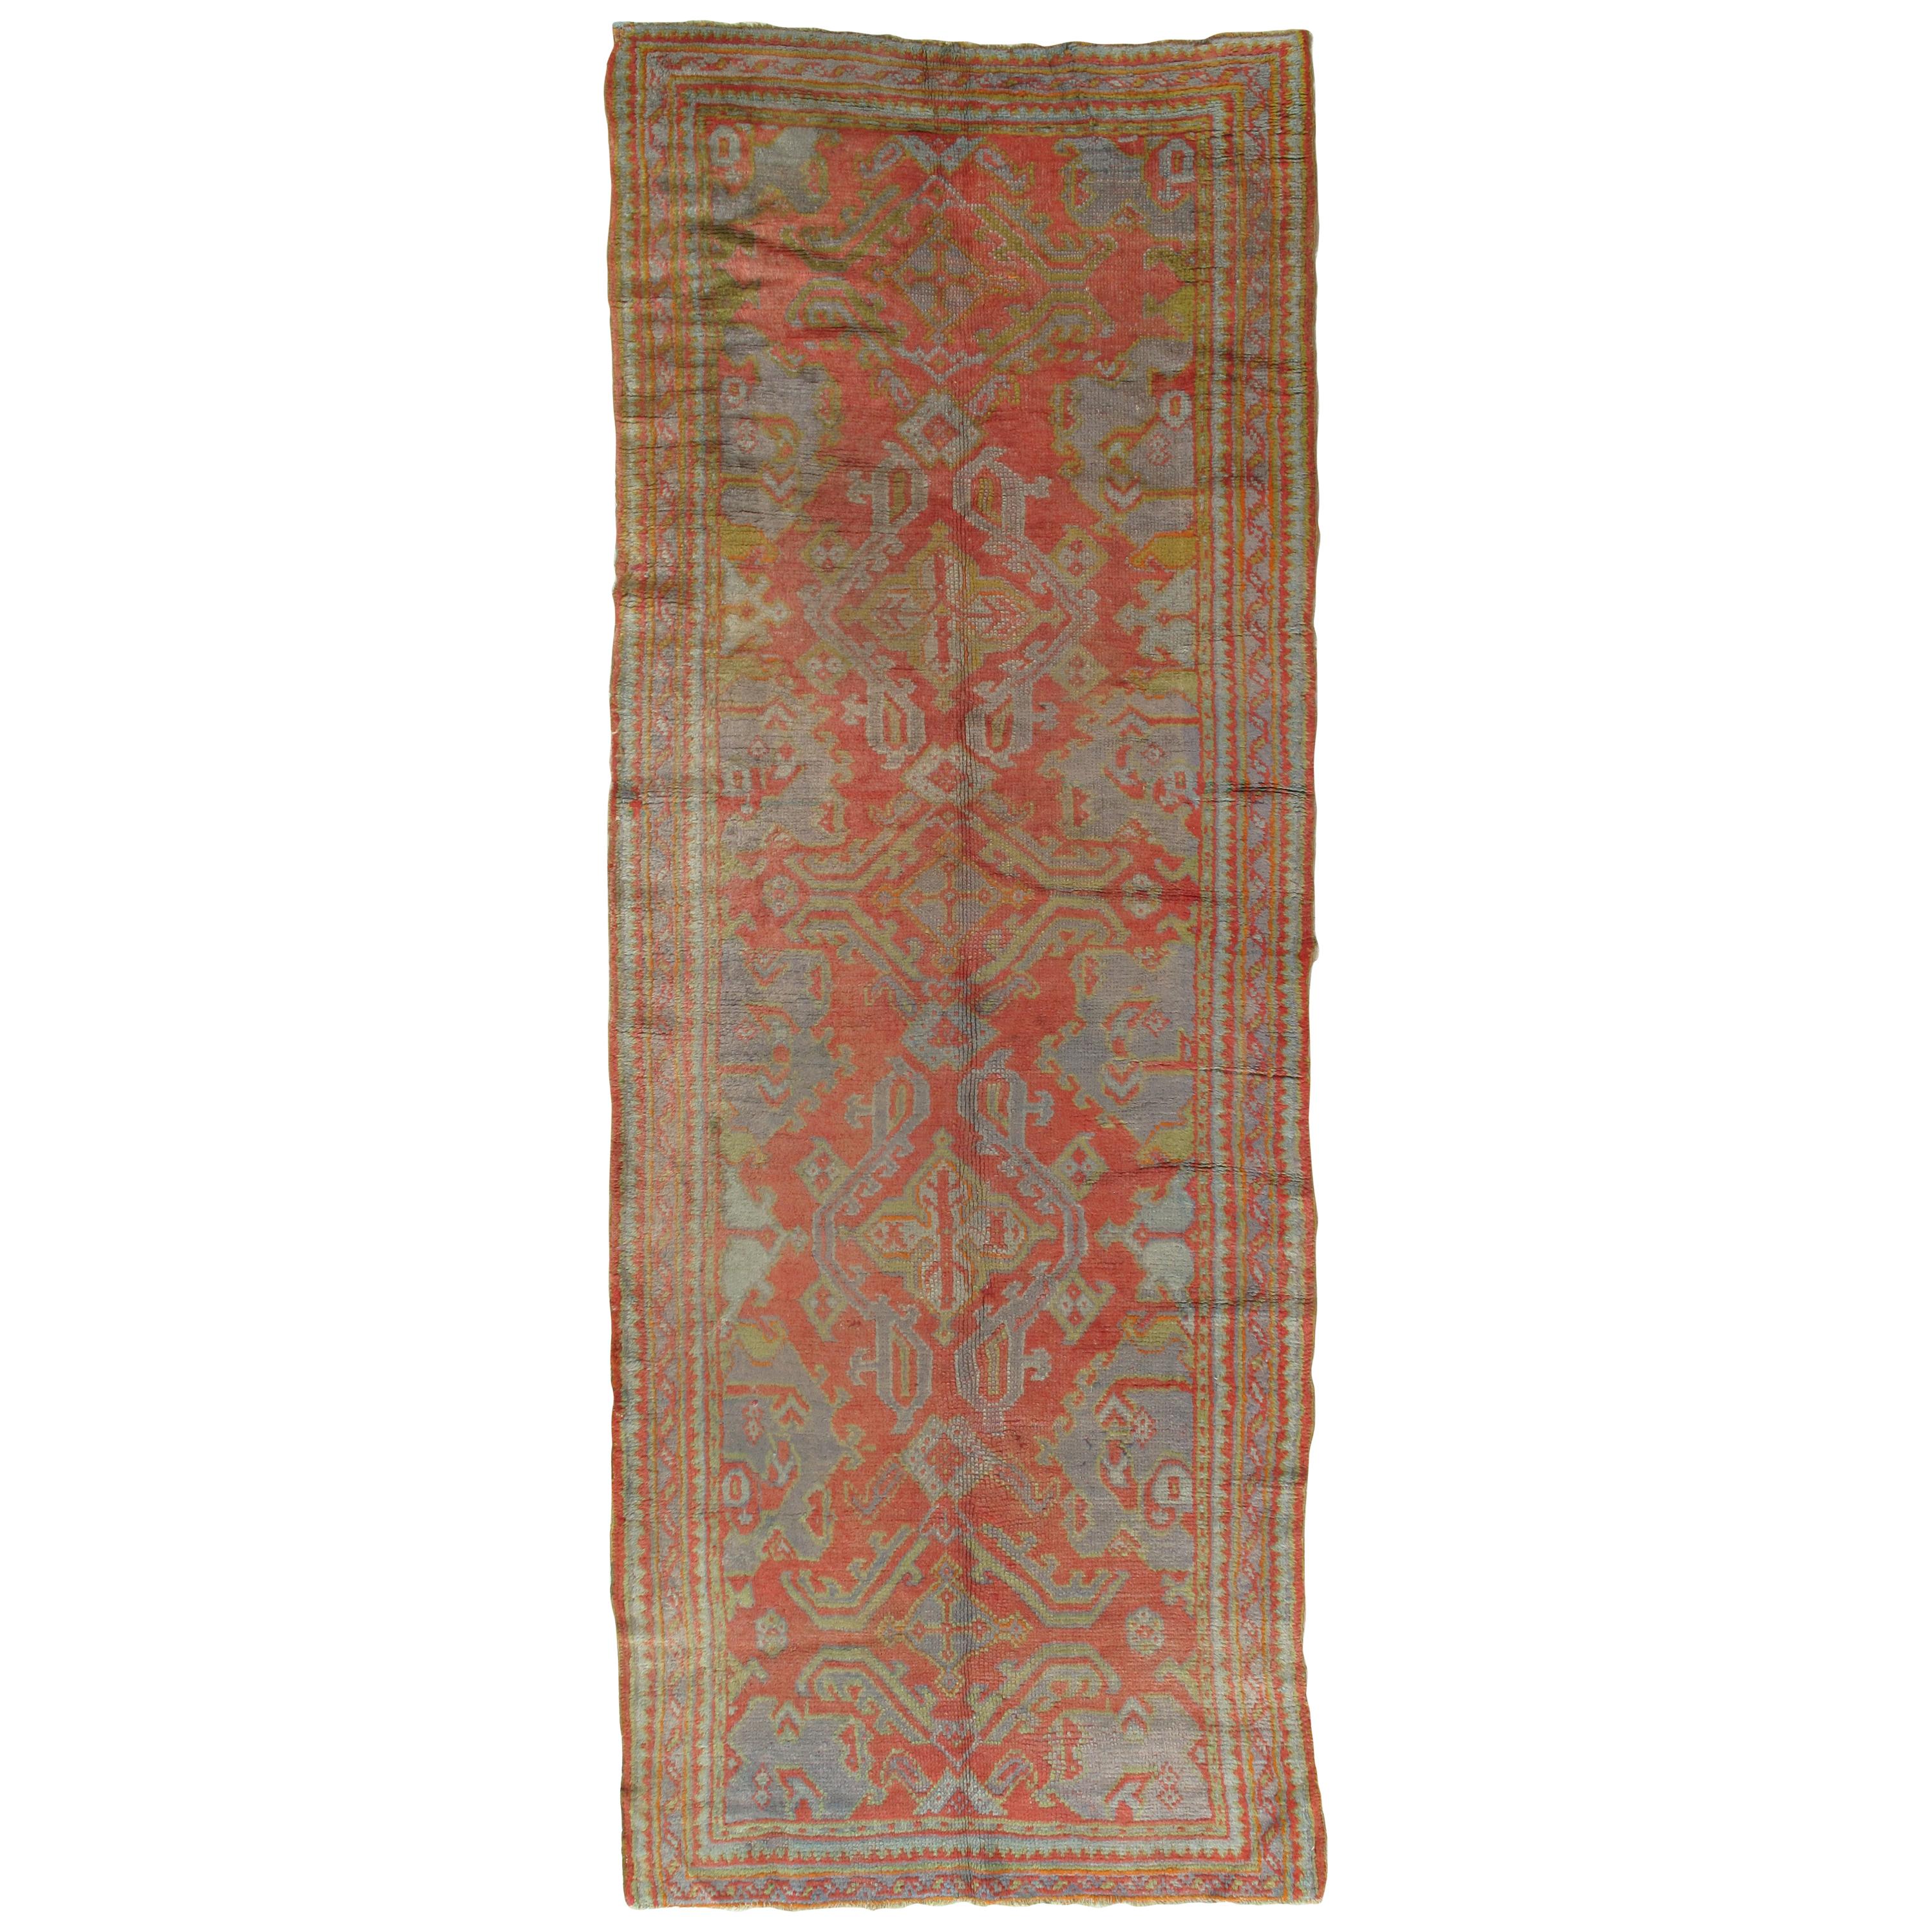 Oushak-Teppich, orientalischer Teppich, handgefertigter Teppich in Koralle, Hellblau, Safran und Grün